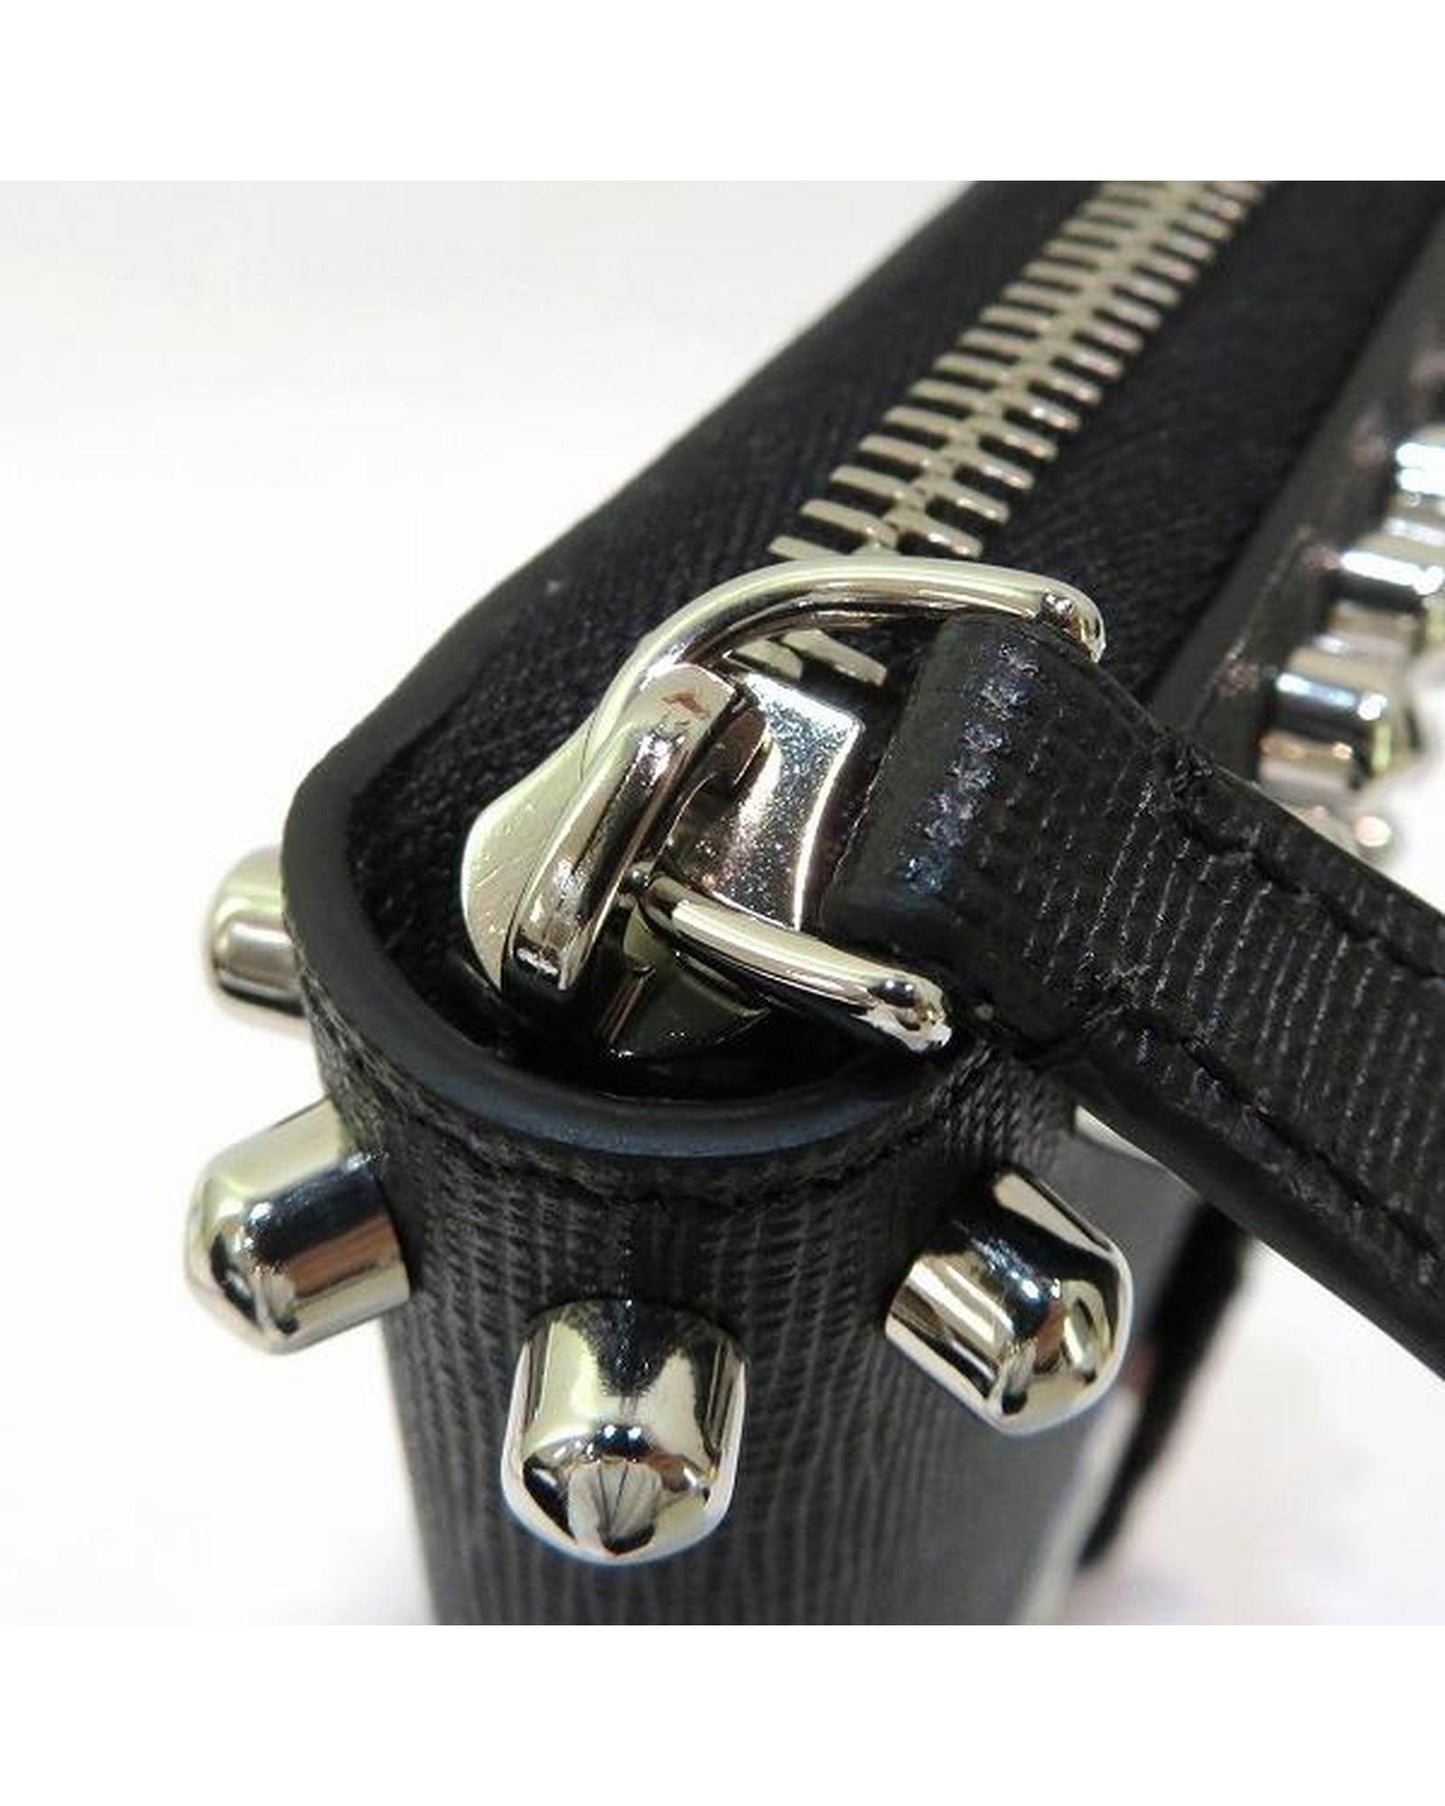 Fendi Women's Karlito Design Leather Zip Around Wallet in Black